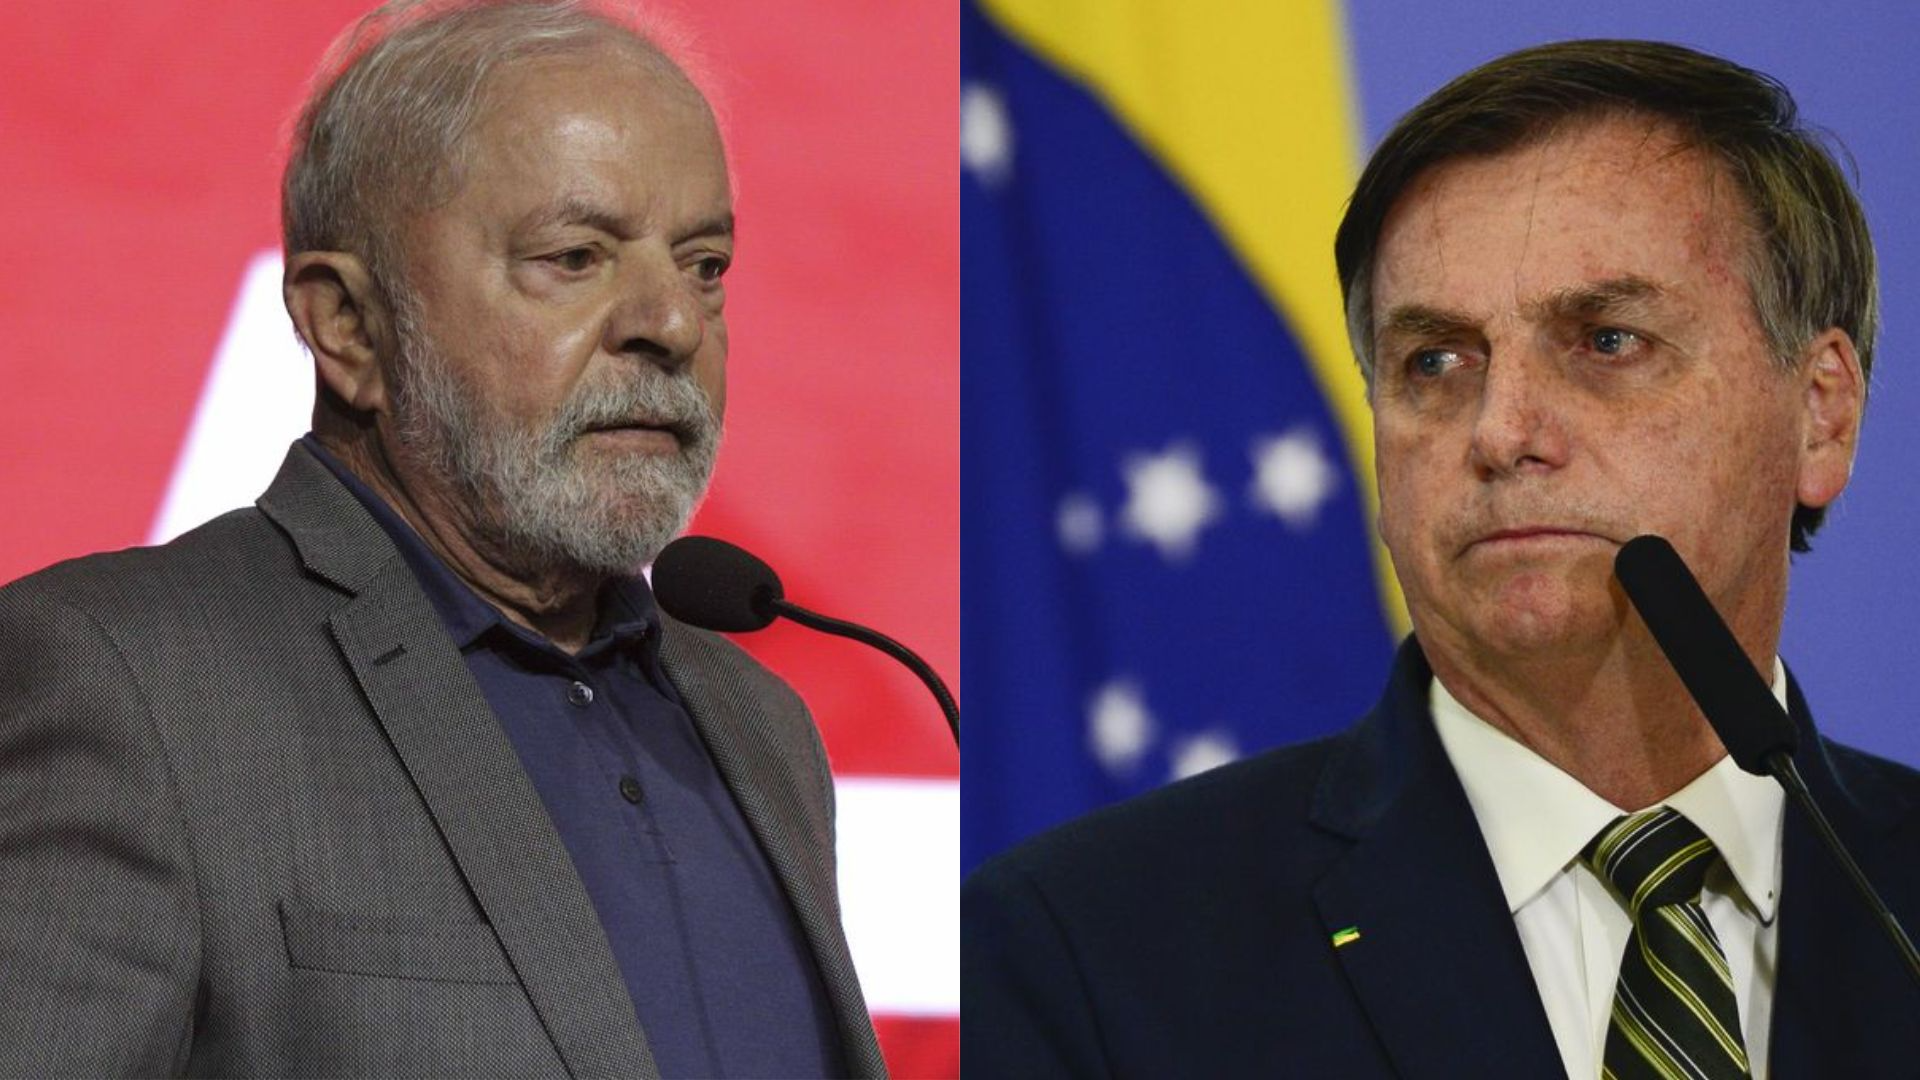 Datafolha: Lula lidera disputa eleitoral com 47%, Bolsonaro com 32%